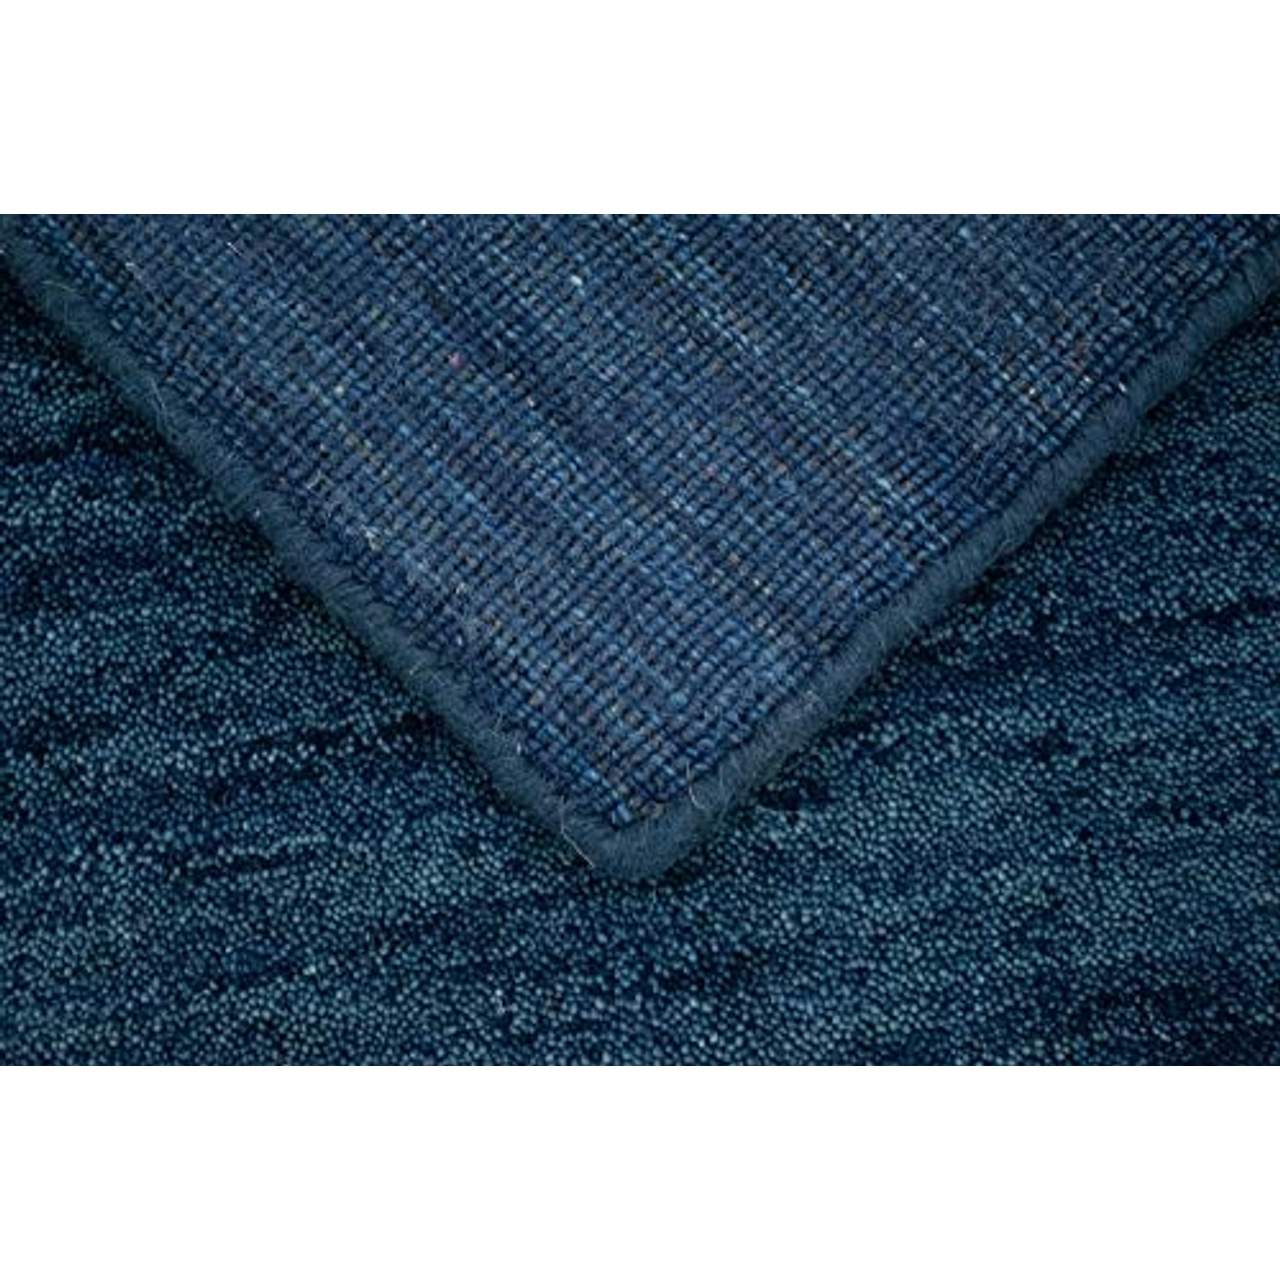 Morgenland Gabbeh Teppich Blau UNI Einfarbig Handgewebt Schurwolle 240 x 170 cm